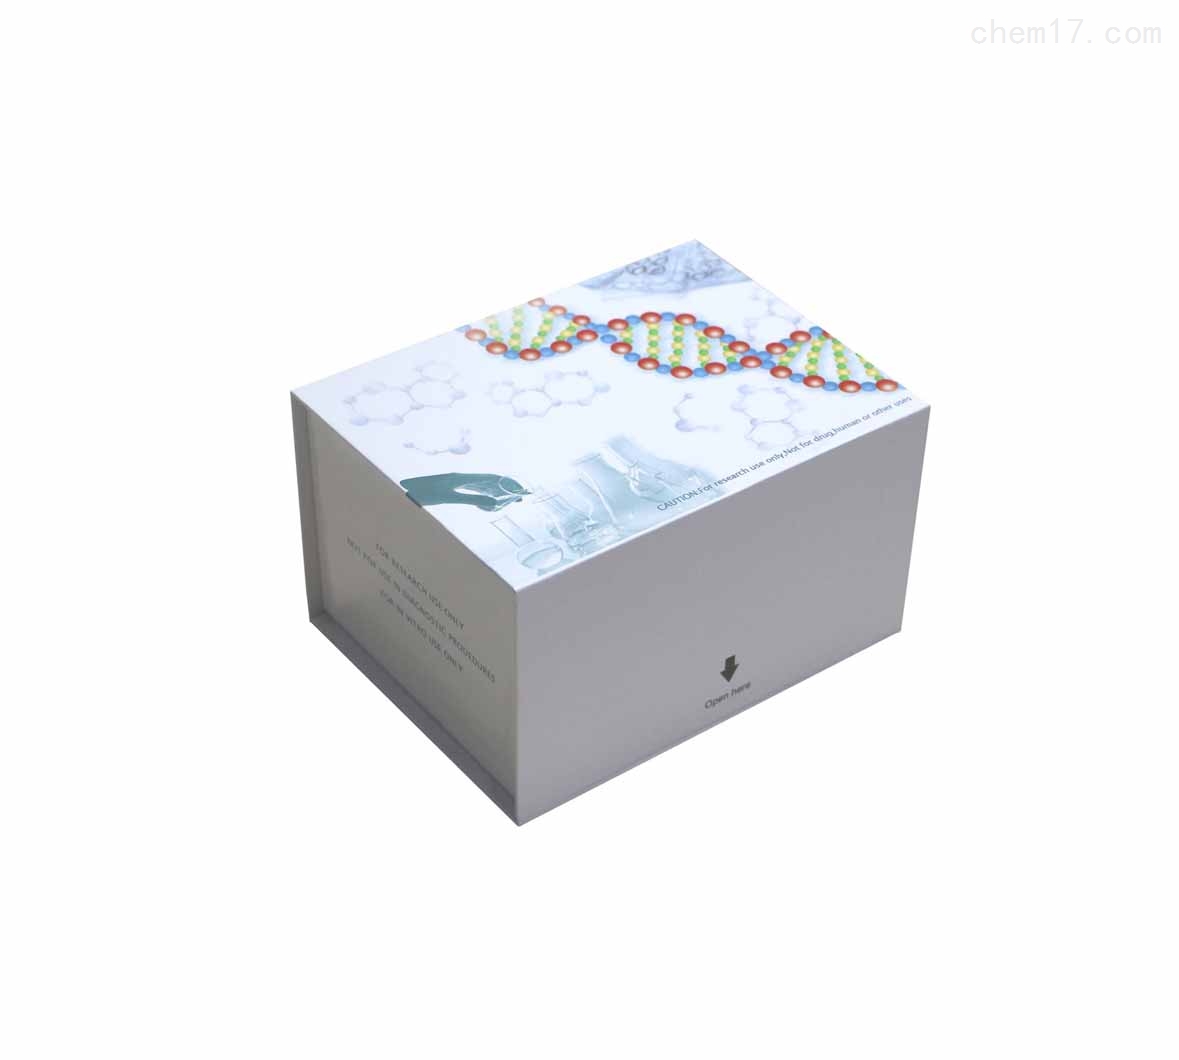 鲑降钙素(SCT)ELISA试剂盒检测目的